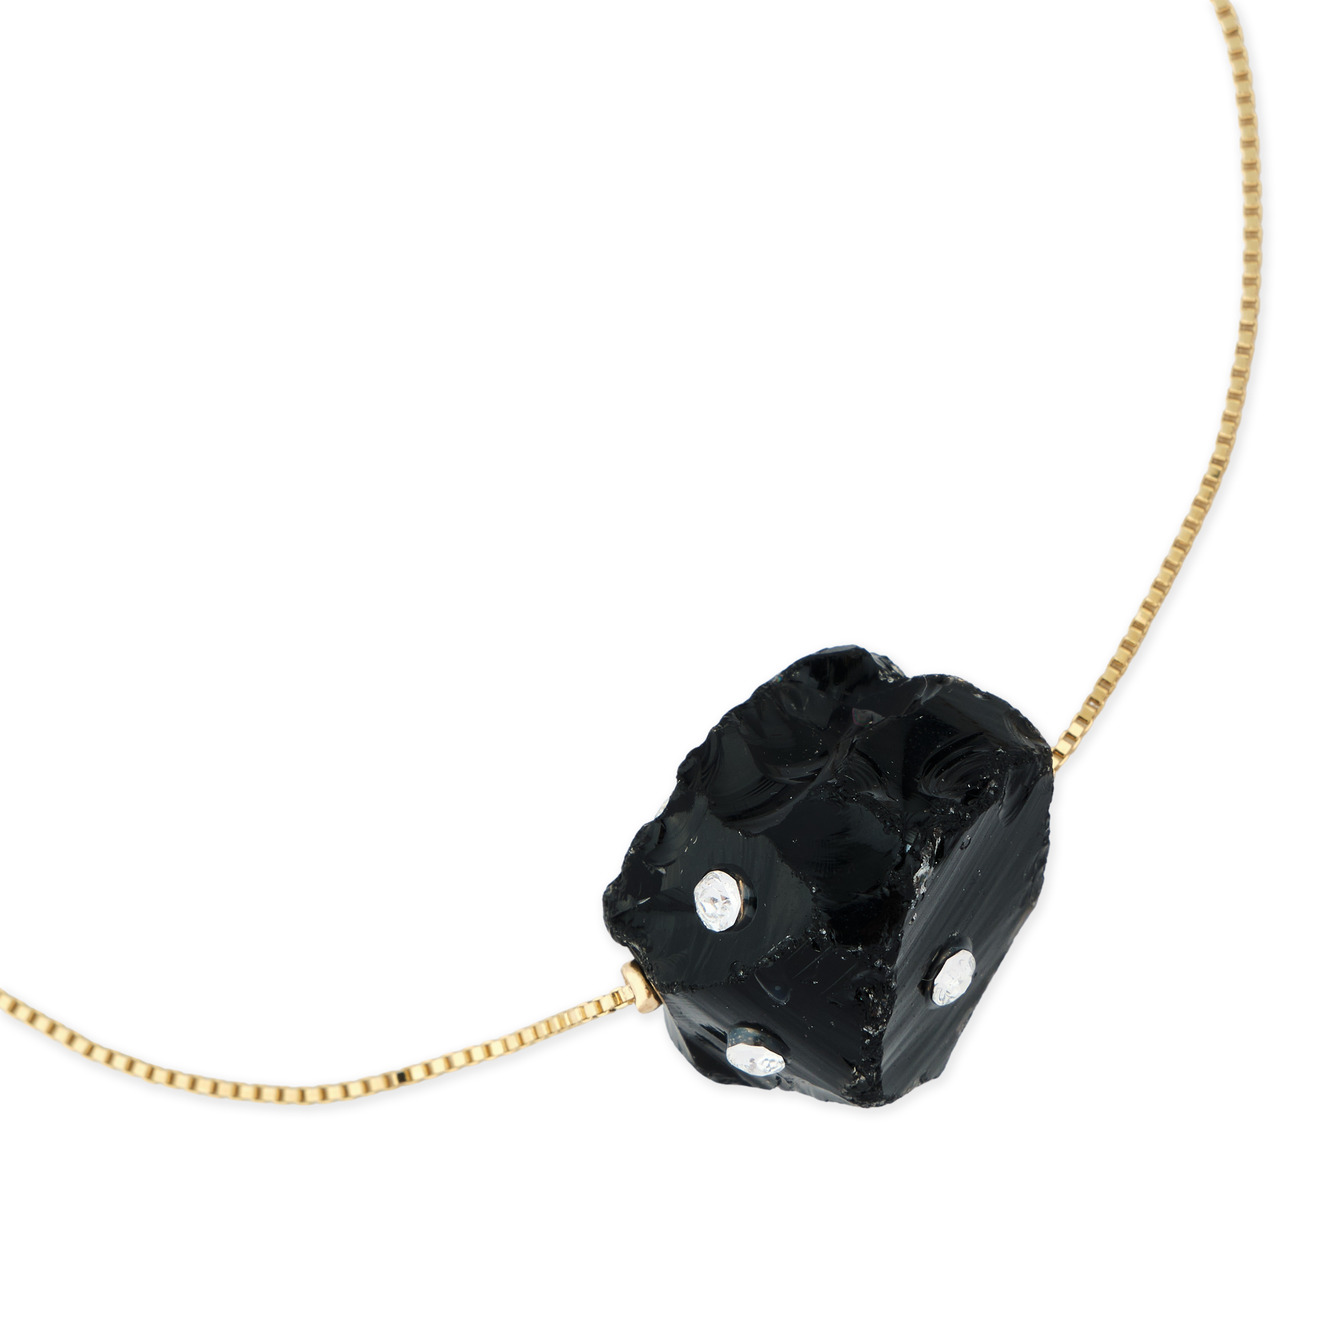 Marni Золотистый браслет с черным обсидианом lisa smith золотистый открытый браслет с античным мужским ликом